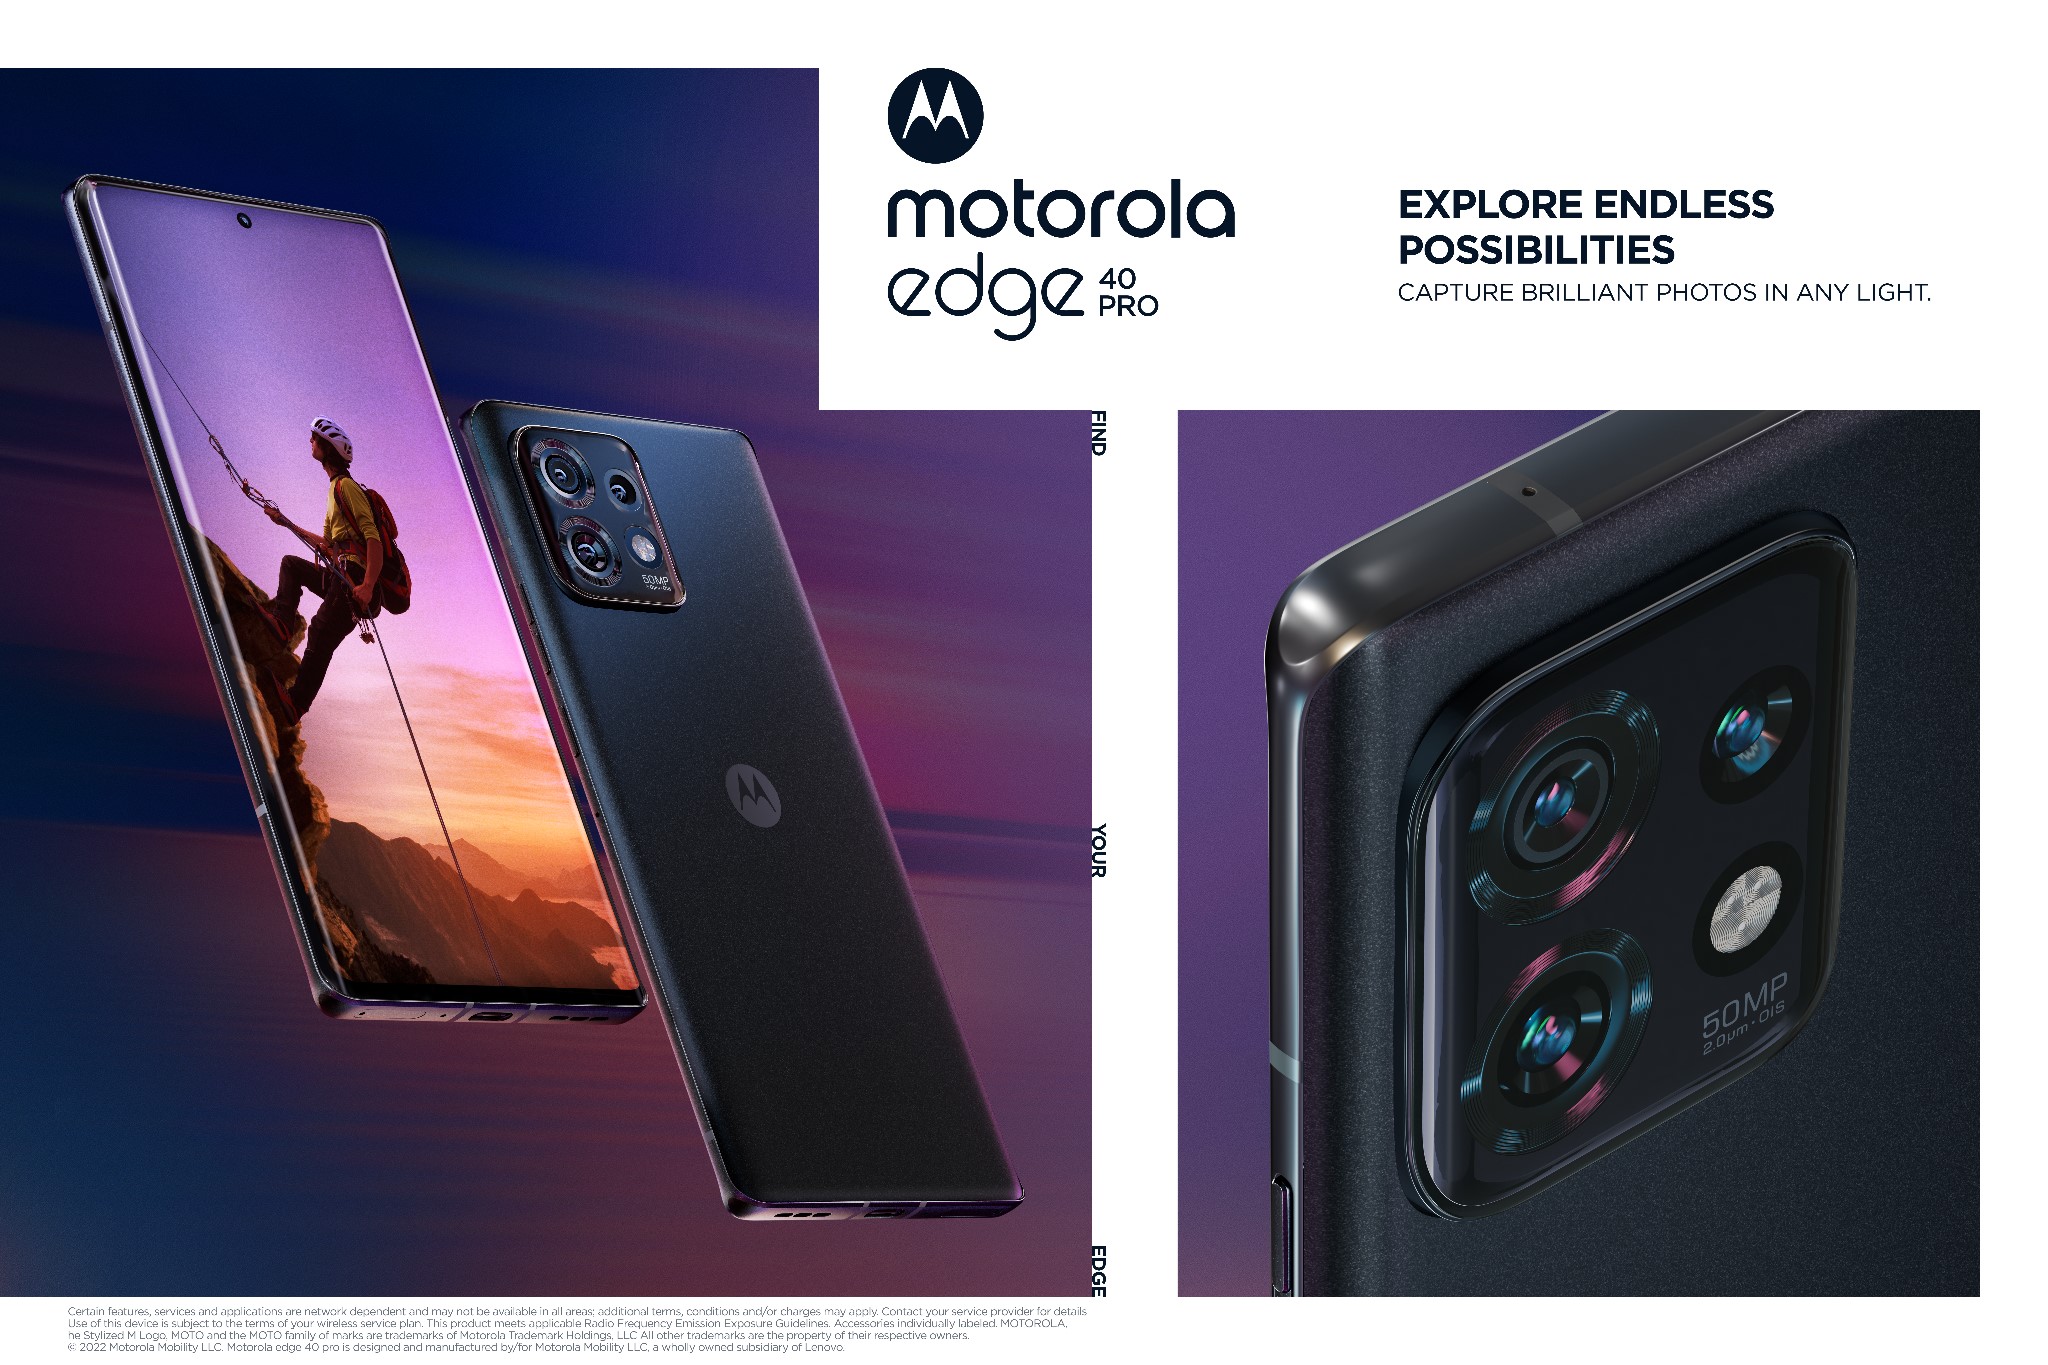 Edge 40 y Edge 40 Pro: Motorola actualiza sus smartphones premium - LA  NACION